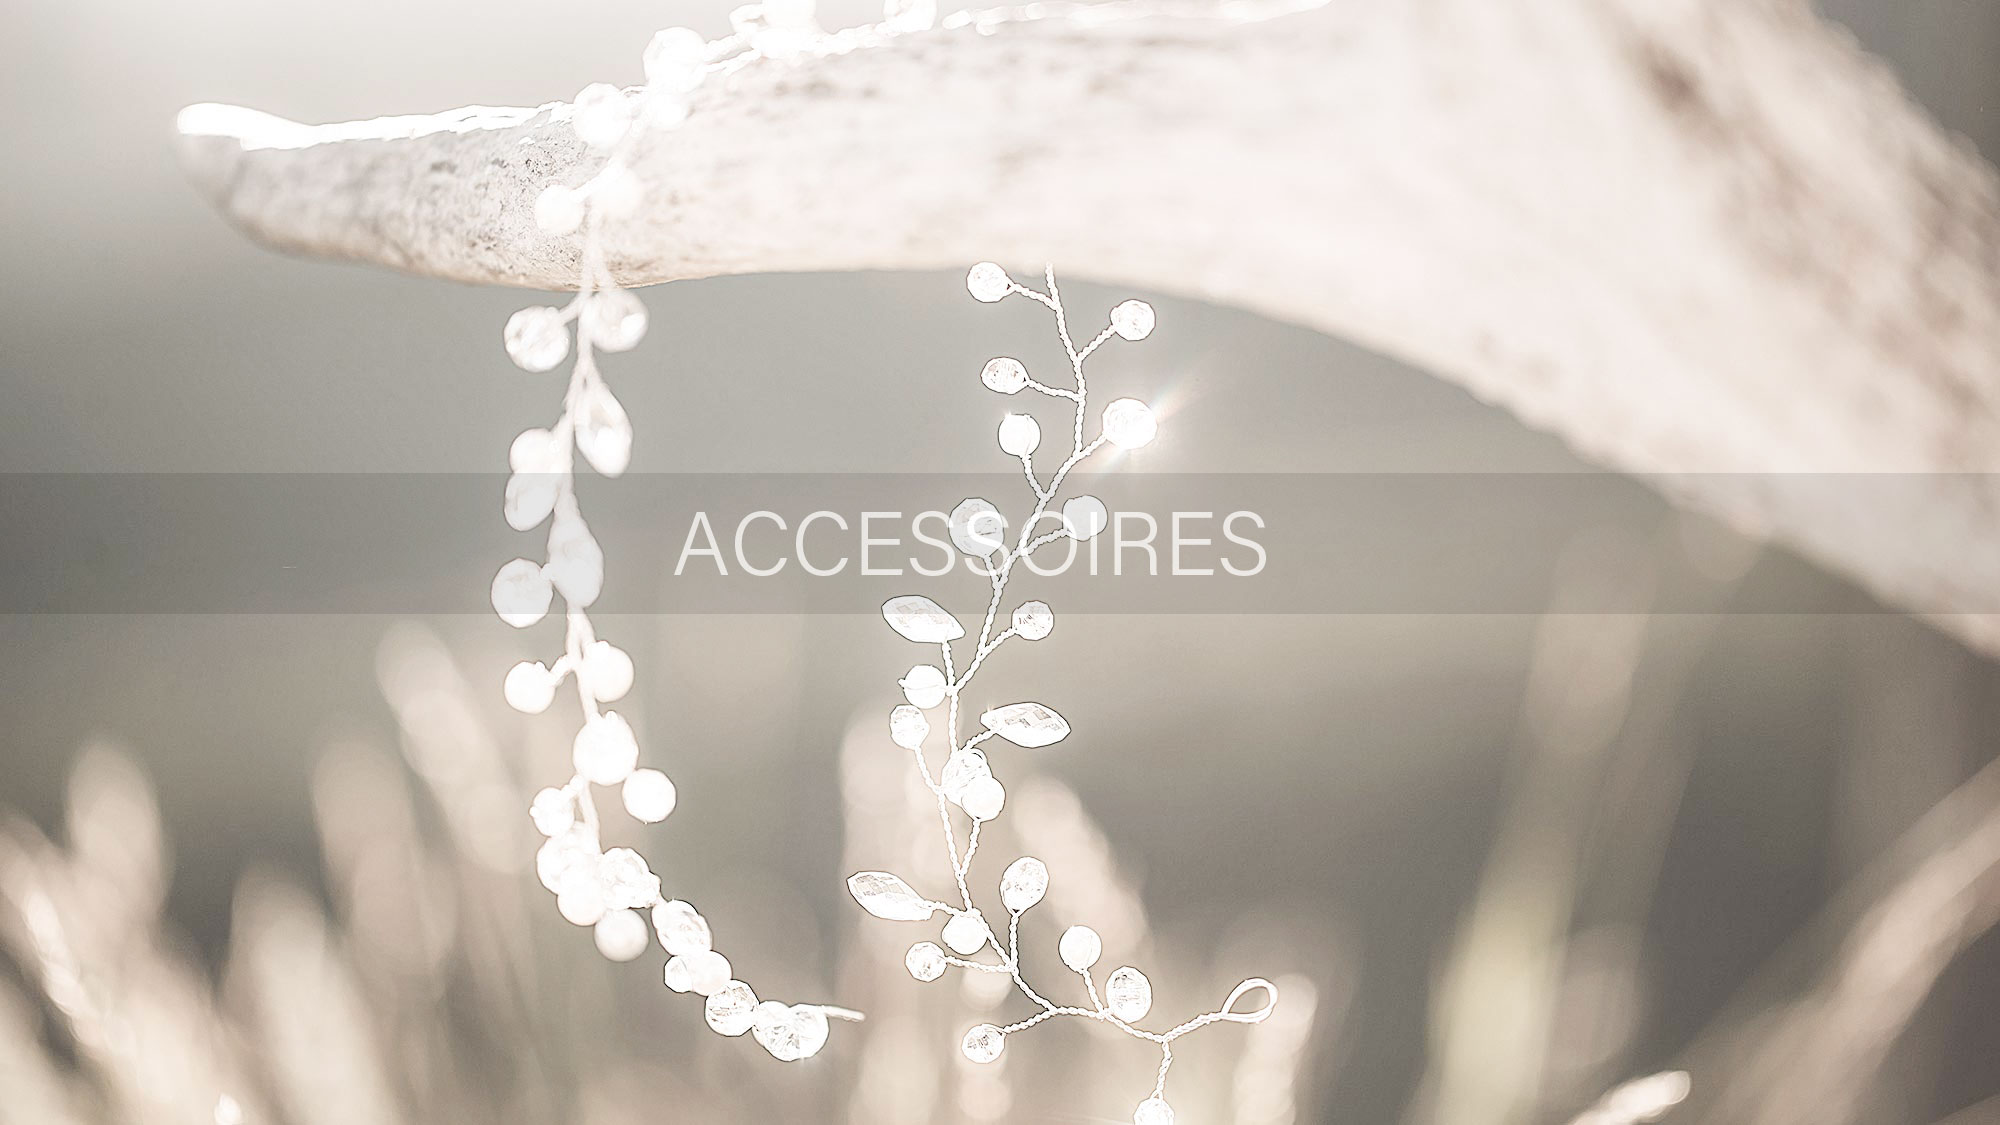 Brautmoden Accessoires für die suchende Braut in Trittau und Umgebung. Brautschuhe für Ihren Hochzeitstag passend zum Brautkleid. Entdecken Sie die große Vielfalt unserer Brautmoden Accessoires in unserem Geschäft in Trittau.